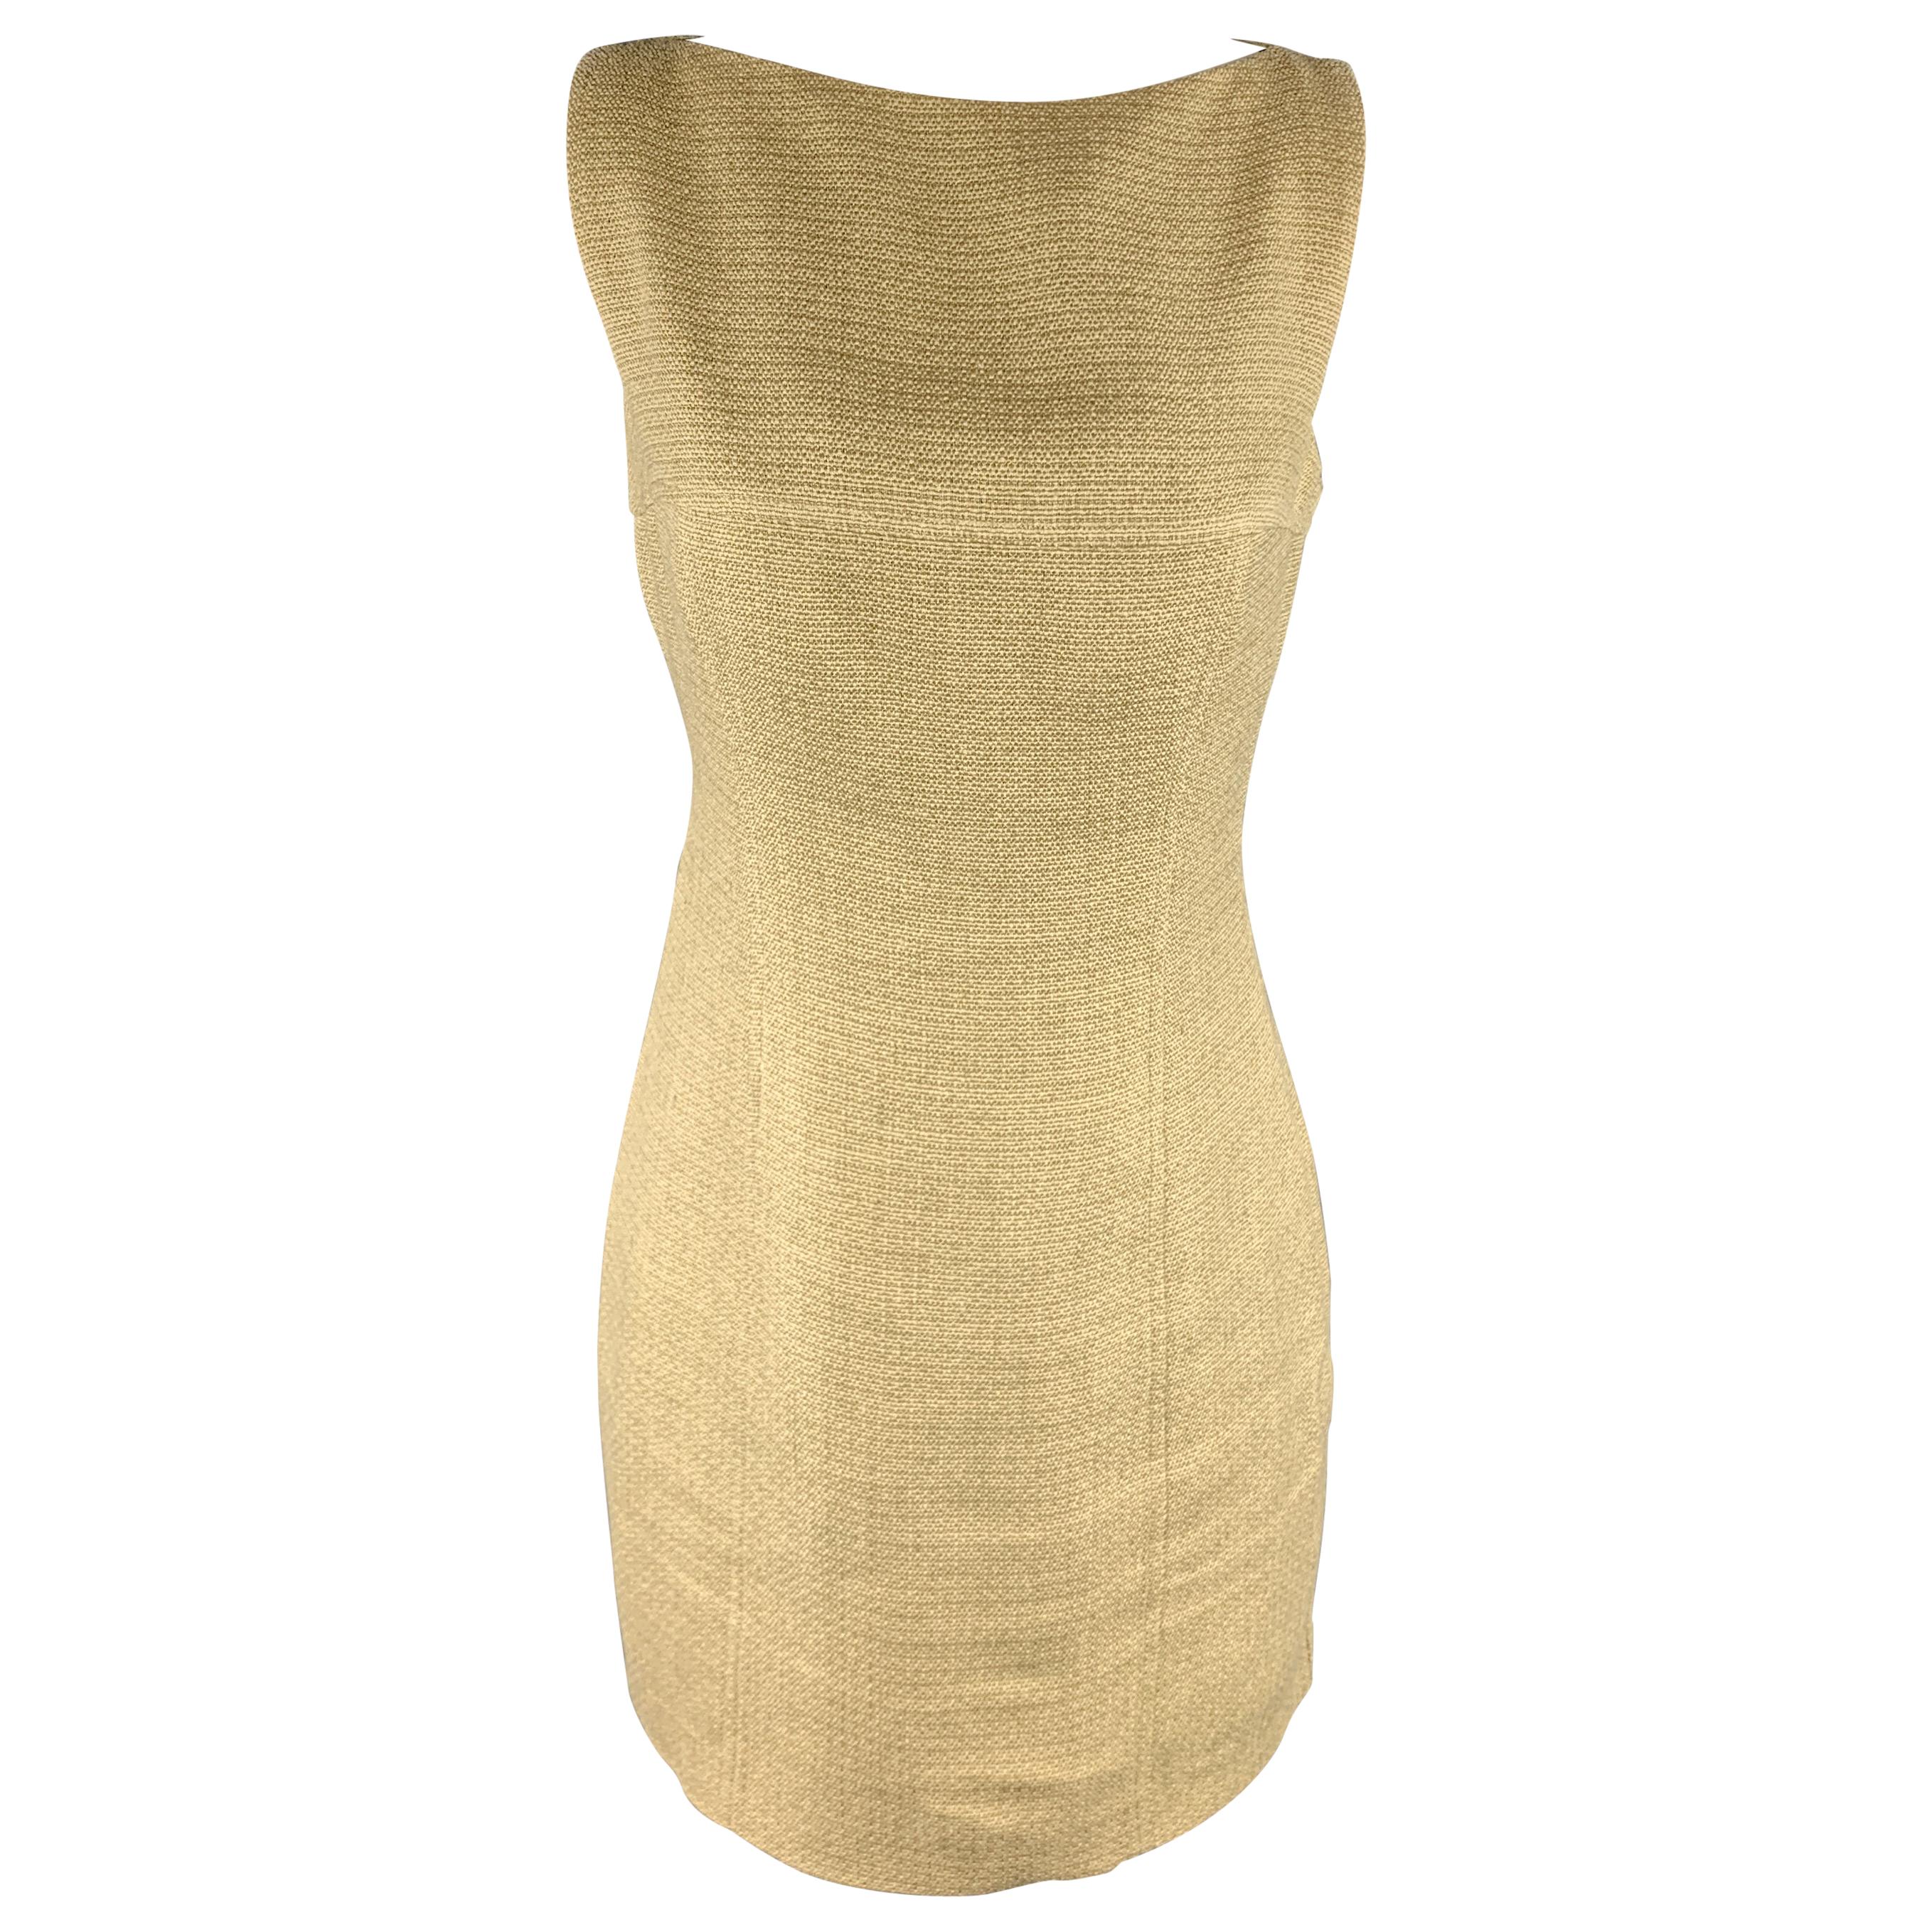 RALPH LAUREN Size 4 Beige & Gold Metallic Linen Blend Shift Dress